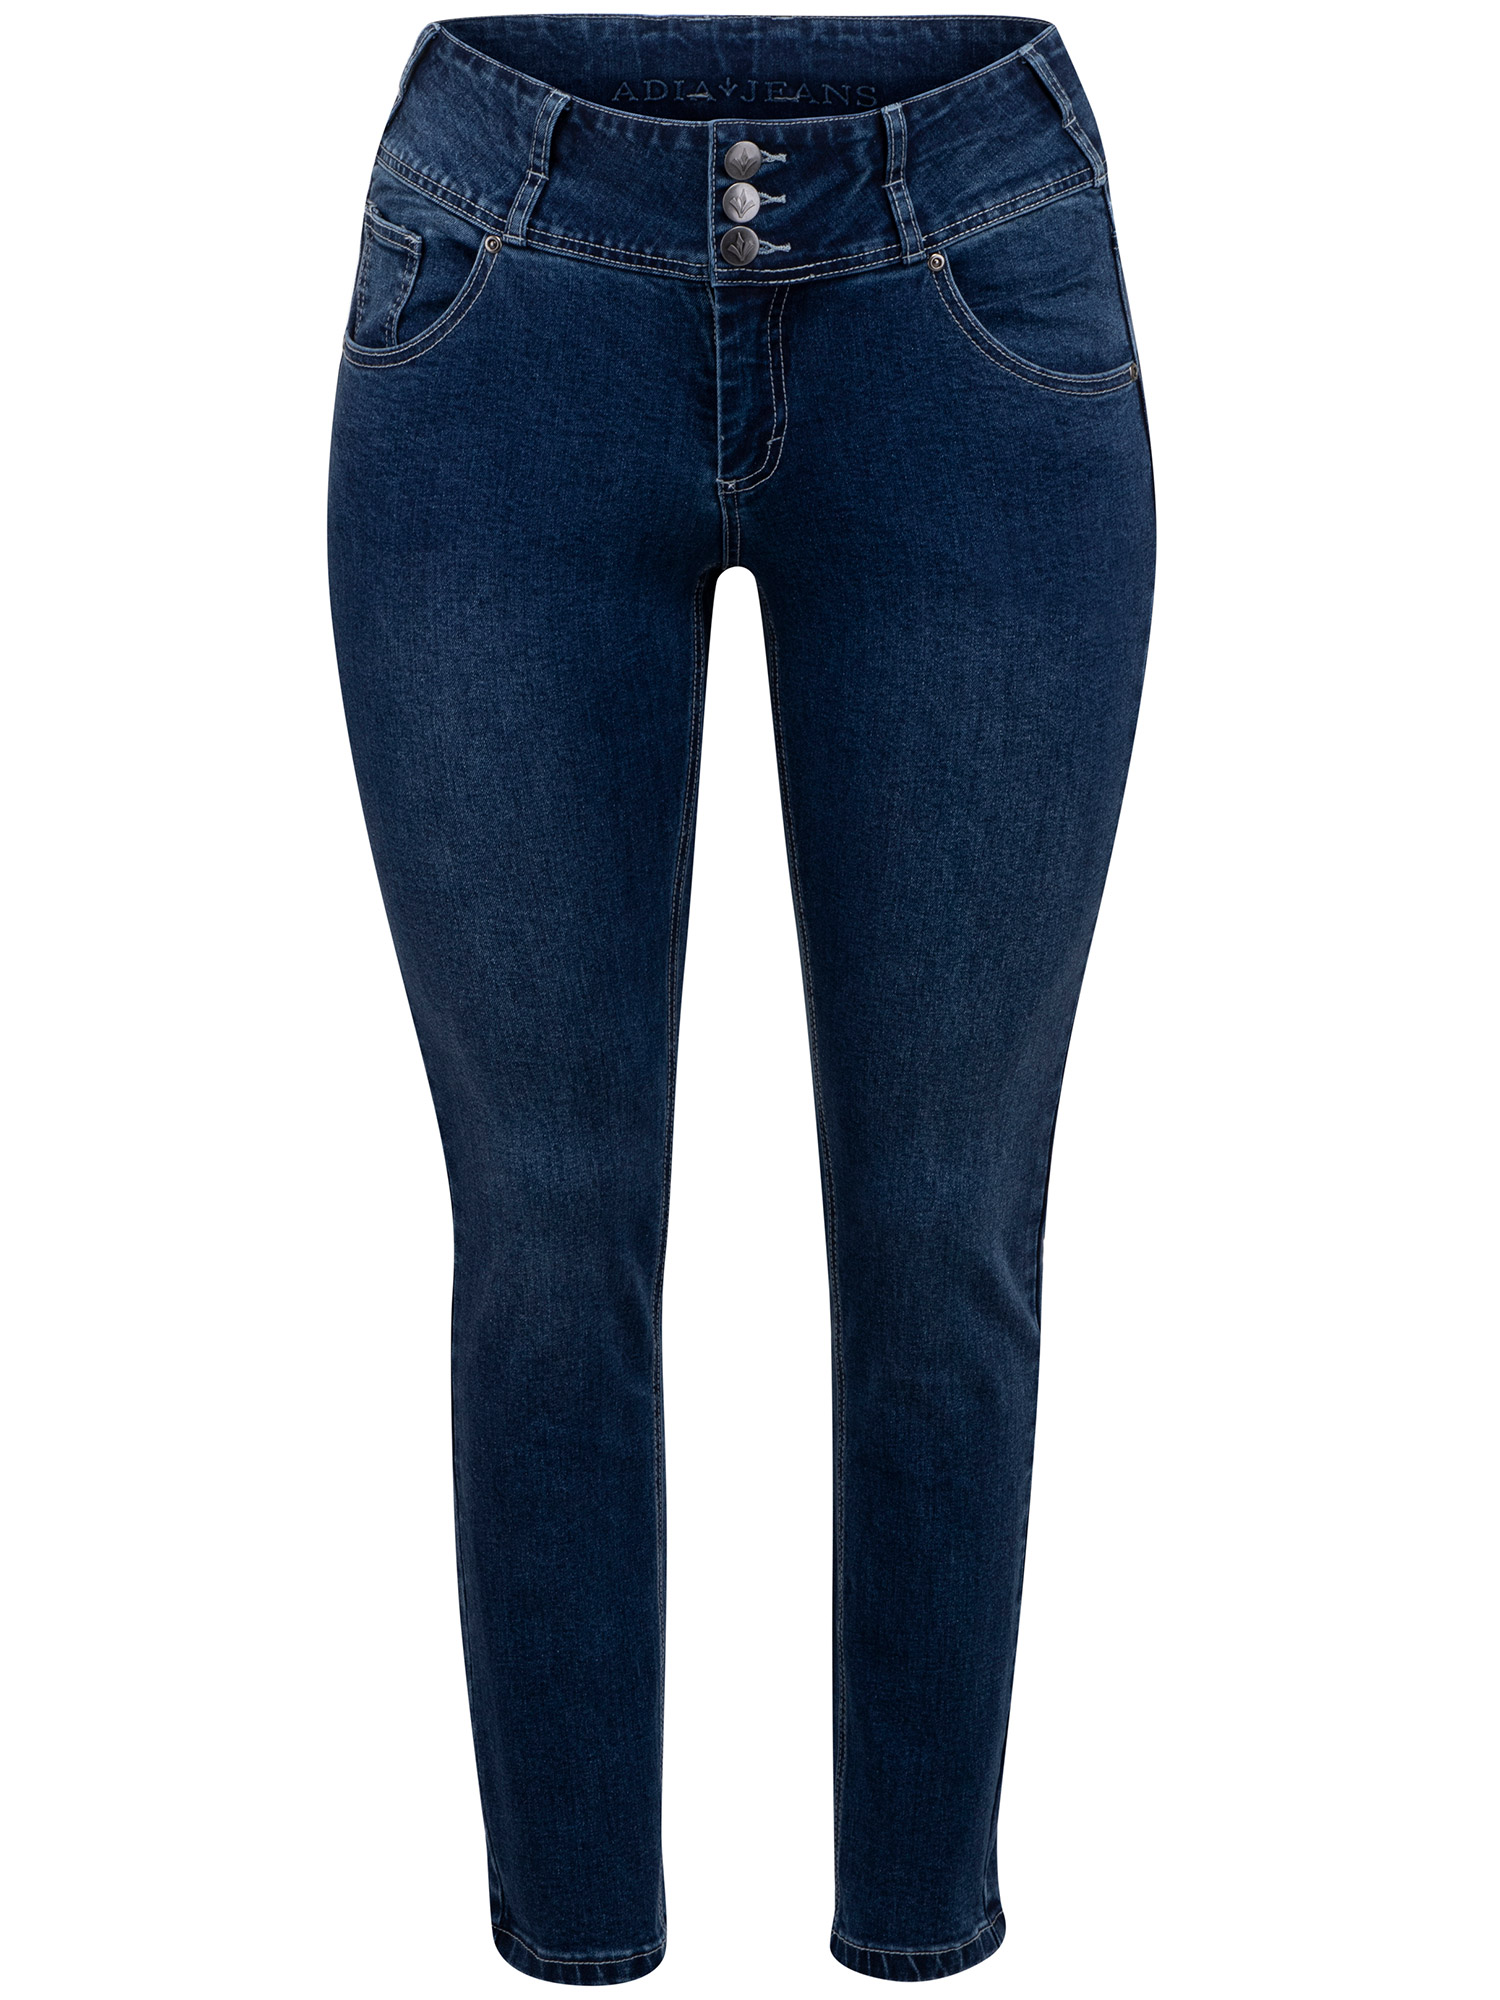 ROME - Blå jeans med stretch fra Adia